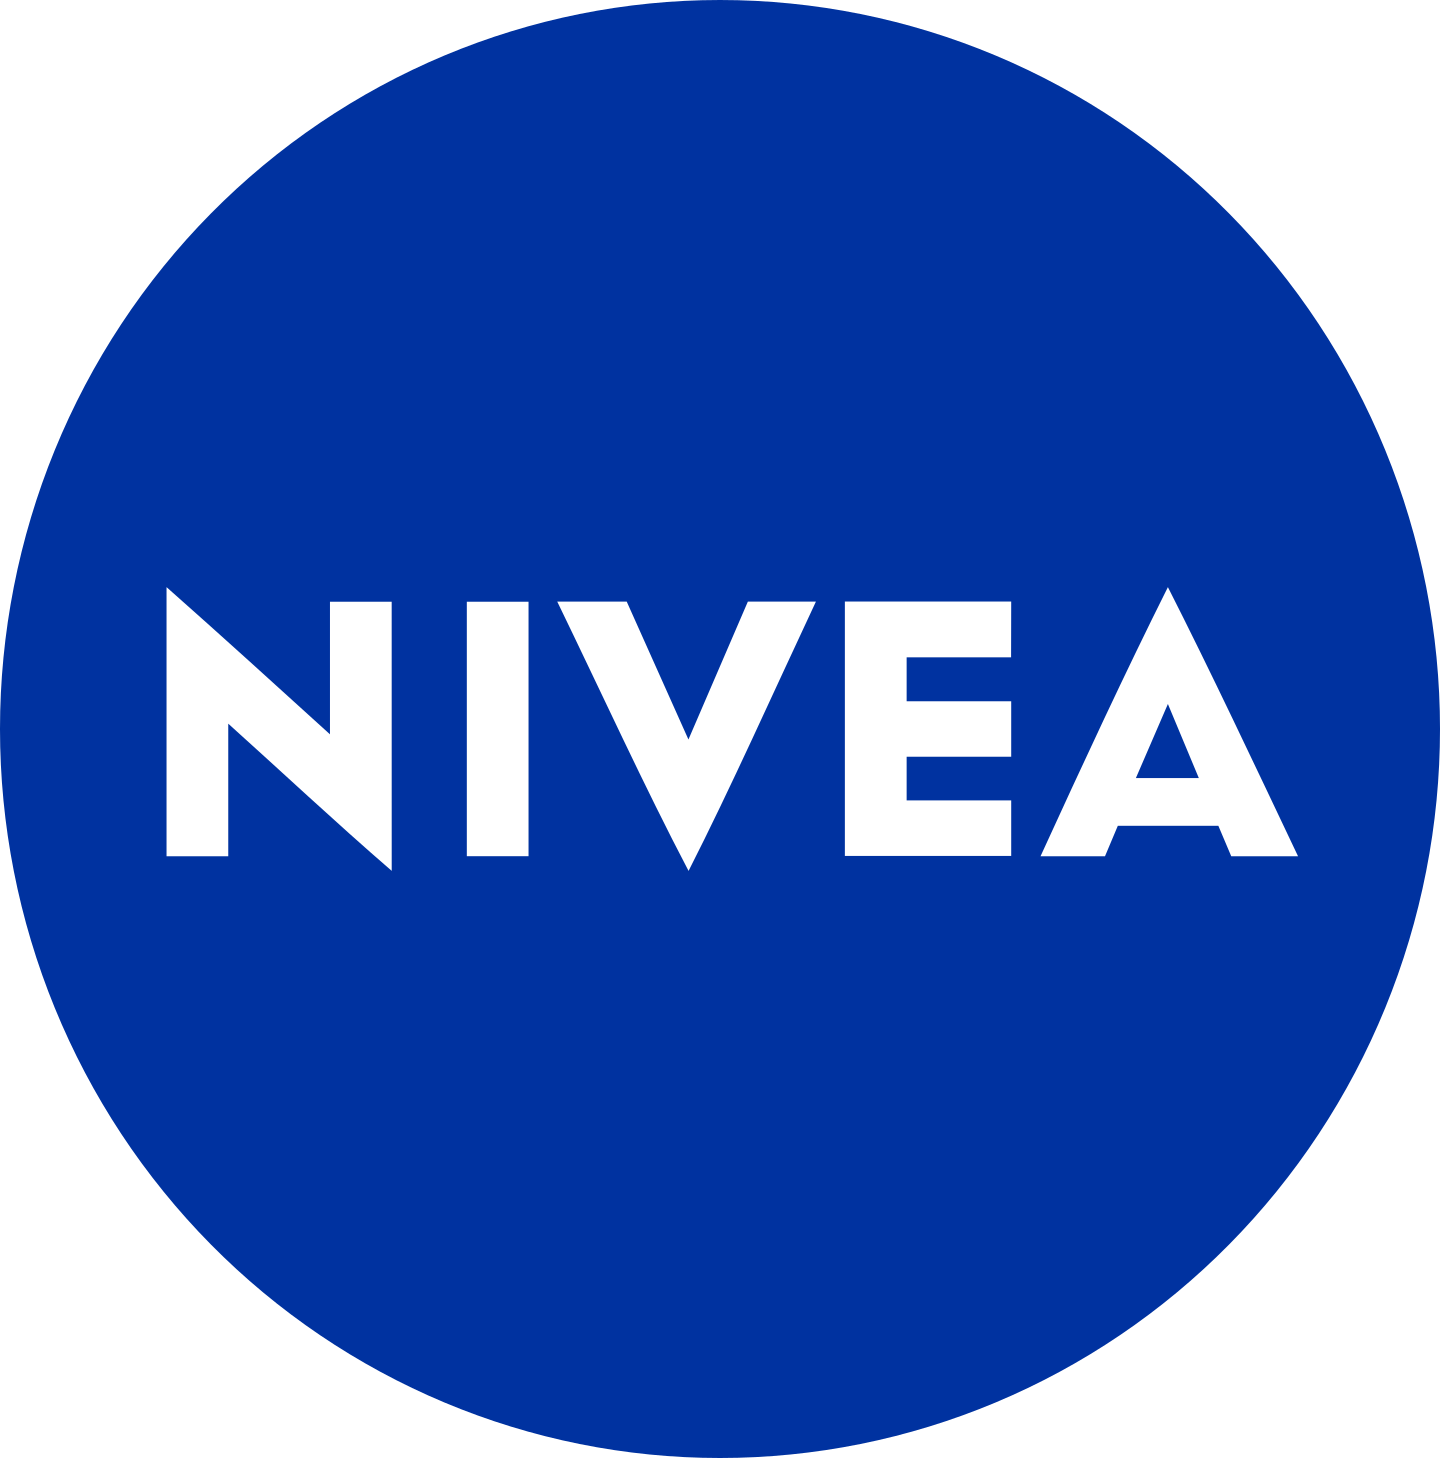 nivea logo 2 1 - Nivea Logo